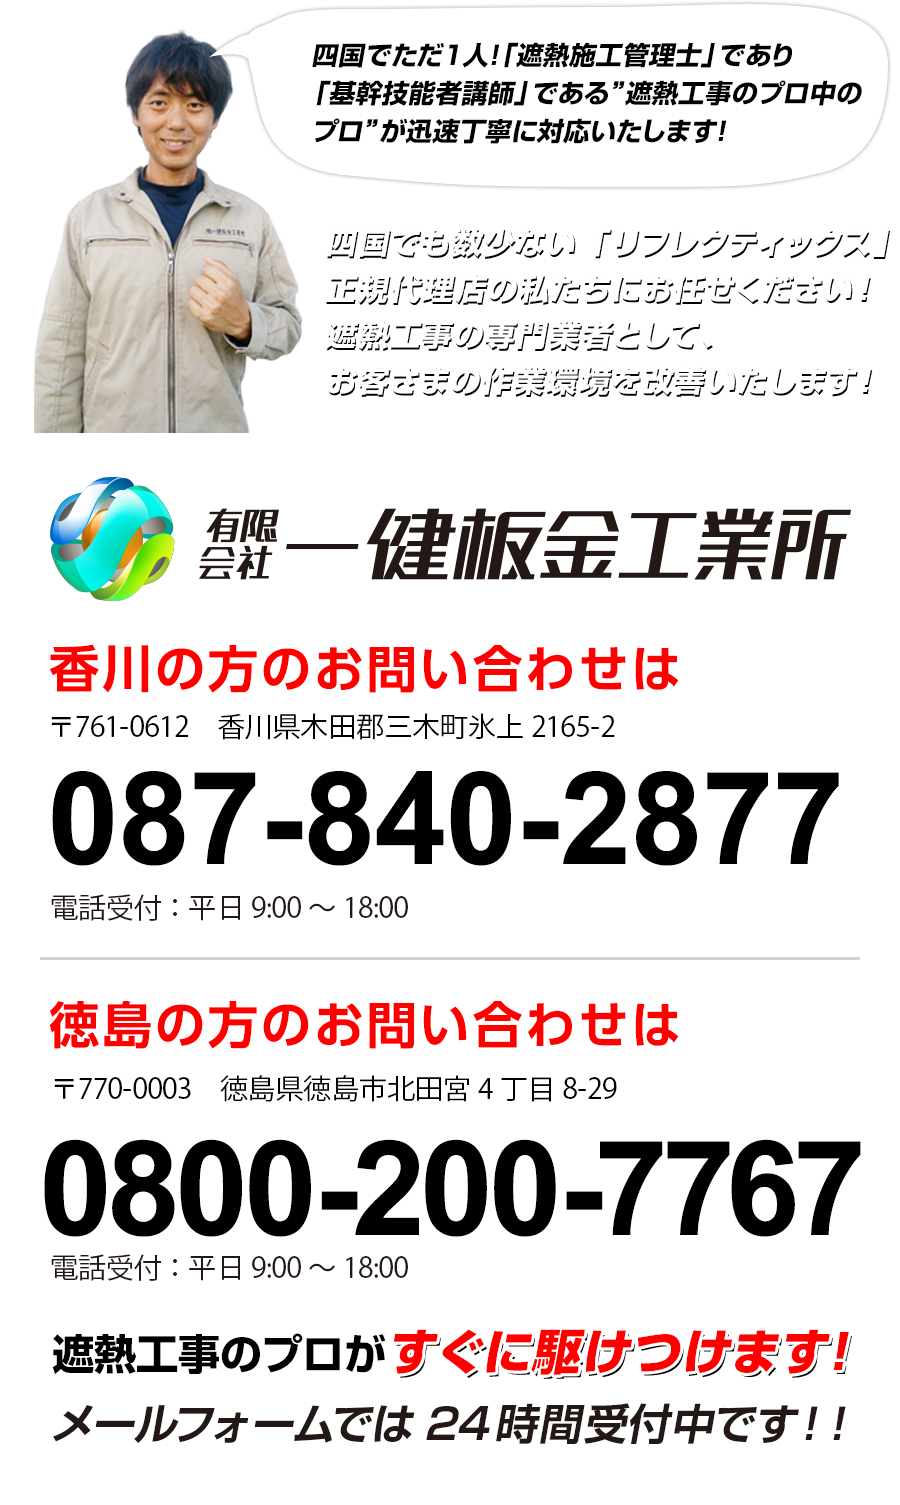 香川の方のお問い合わせは087-840-2877電話受付：平日9:00～18:00、徳島の方のお問い合わせは0800-200-7767電話受付：平日9:00～18:00